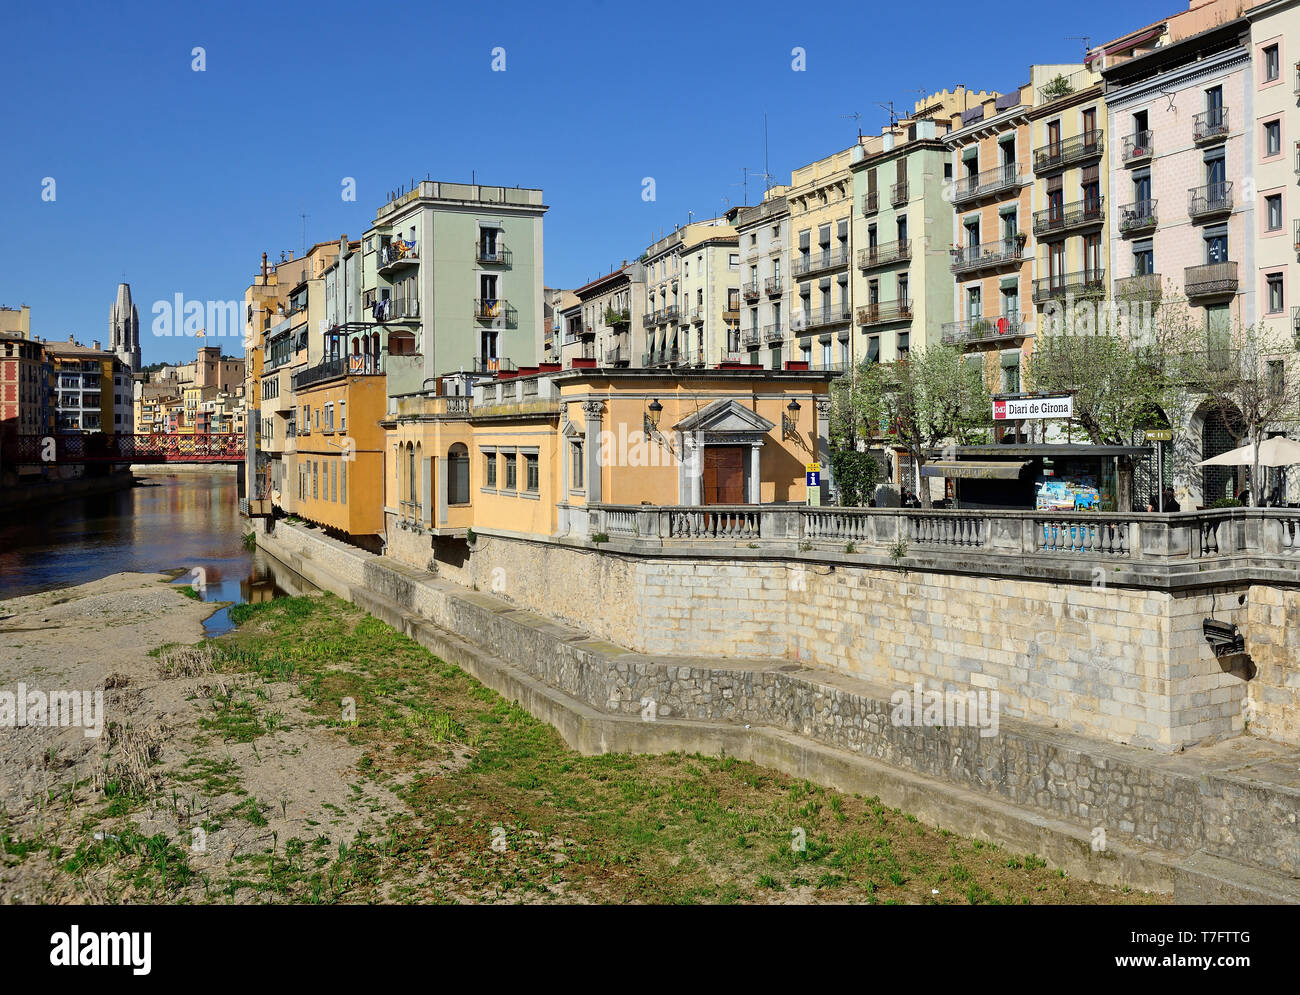 In Spagna, in Catalogna: panoramica della città di Girona e la sua tradizionale vecchie case con facciate colorate sulle rive del fiume Onyar Foto Stock